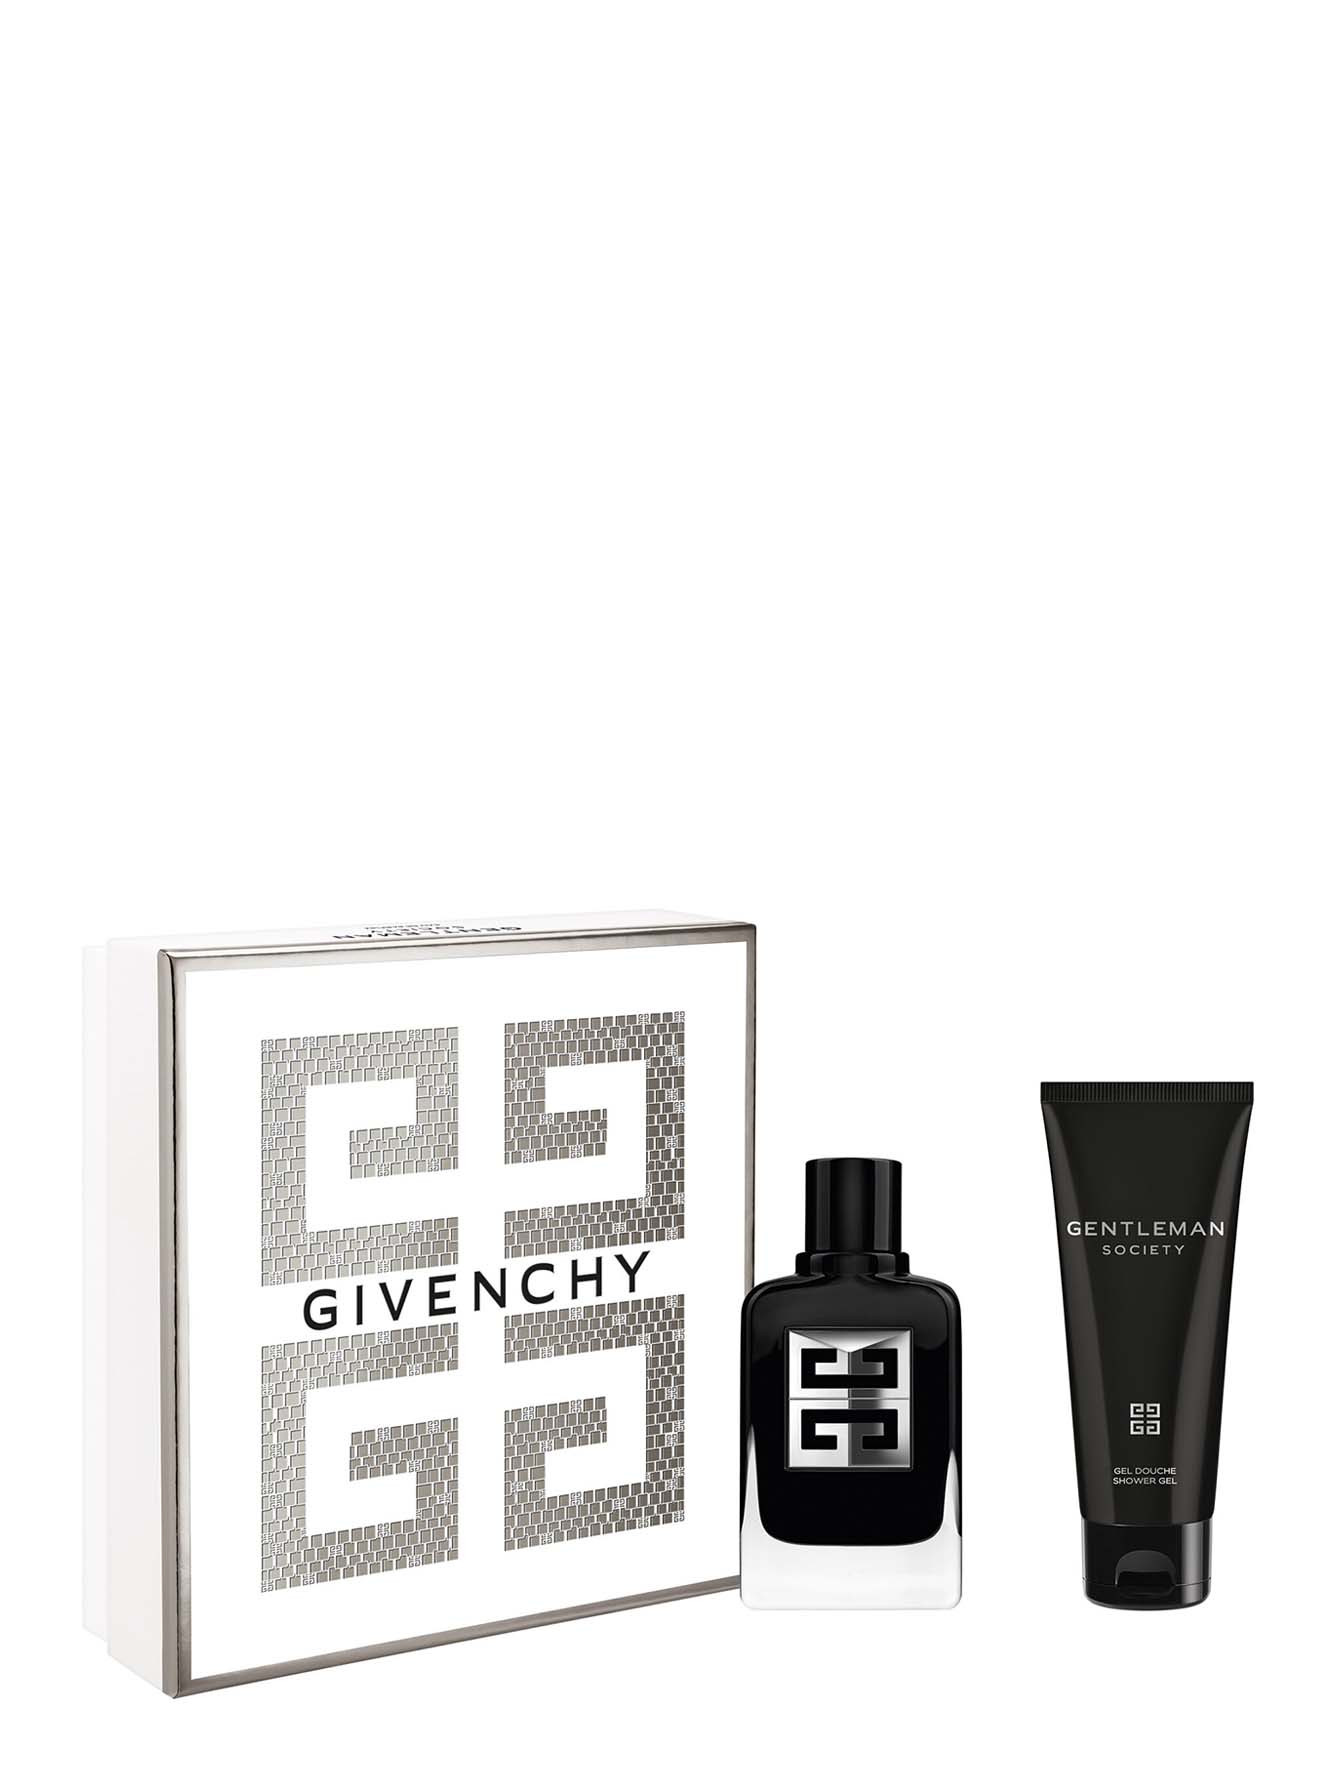 Мужской подарочный набор Givenchy Gentleman Society - Обтравка1